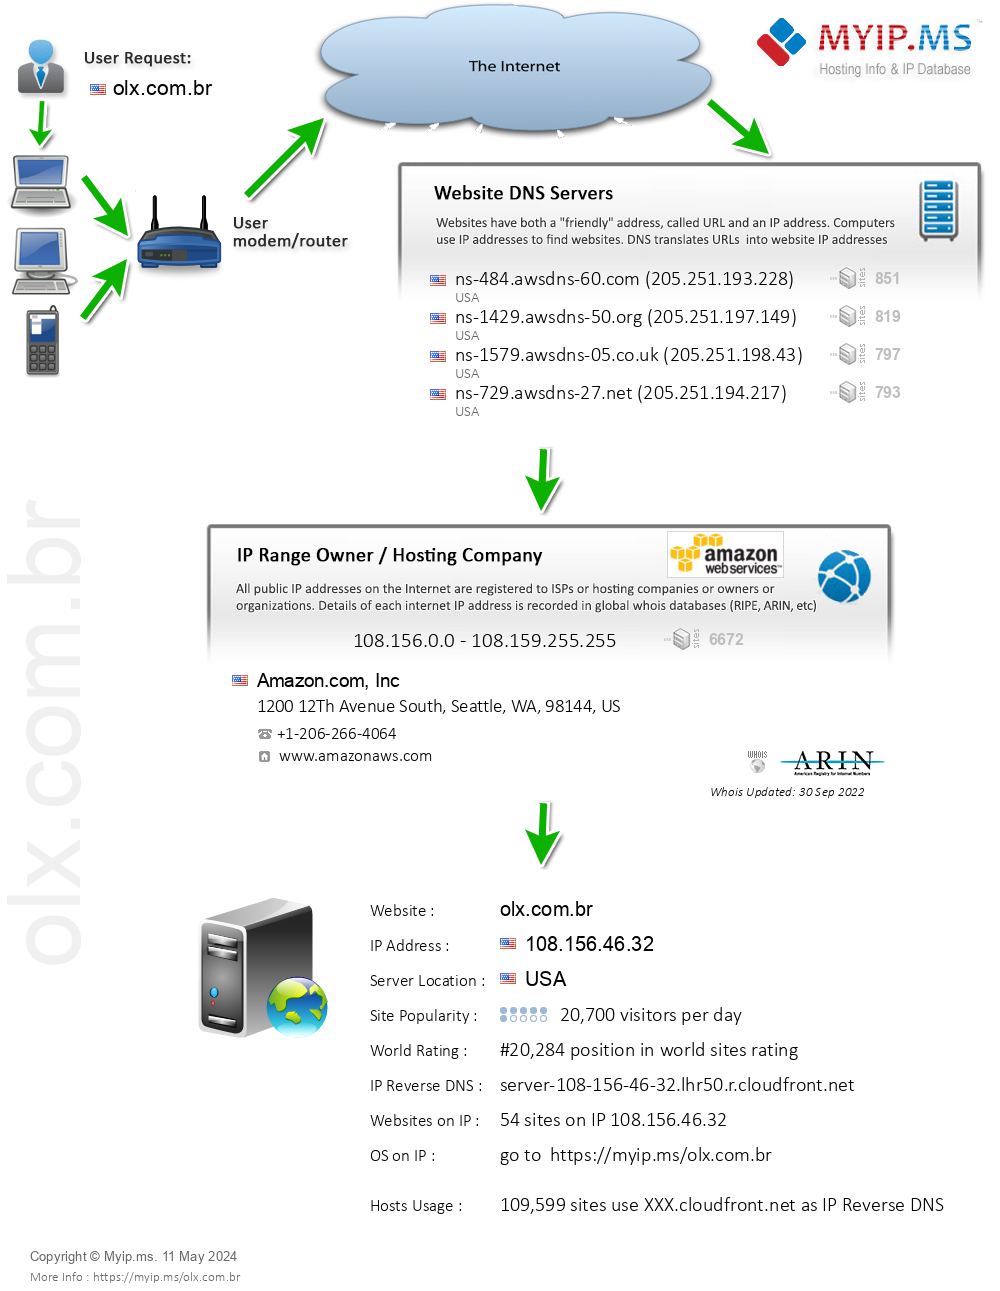 Olx.com.br - Website Hosting Visual IP Diagram